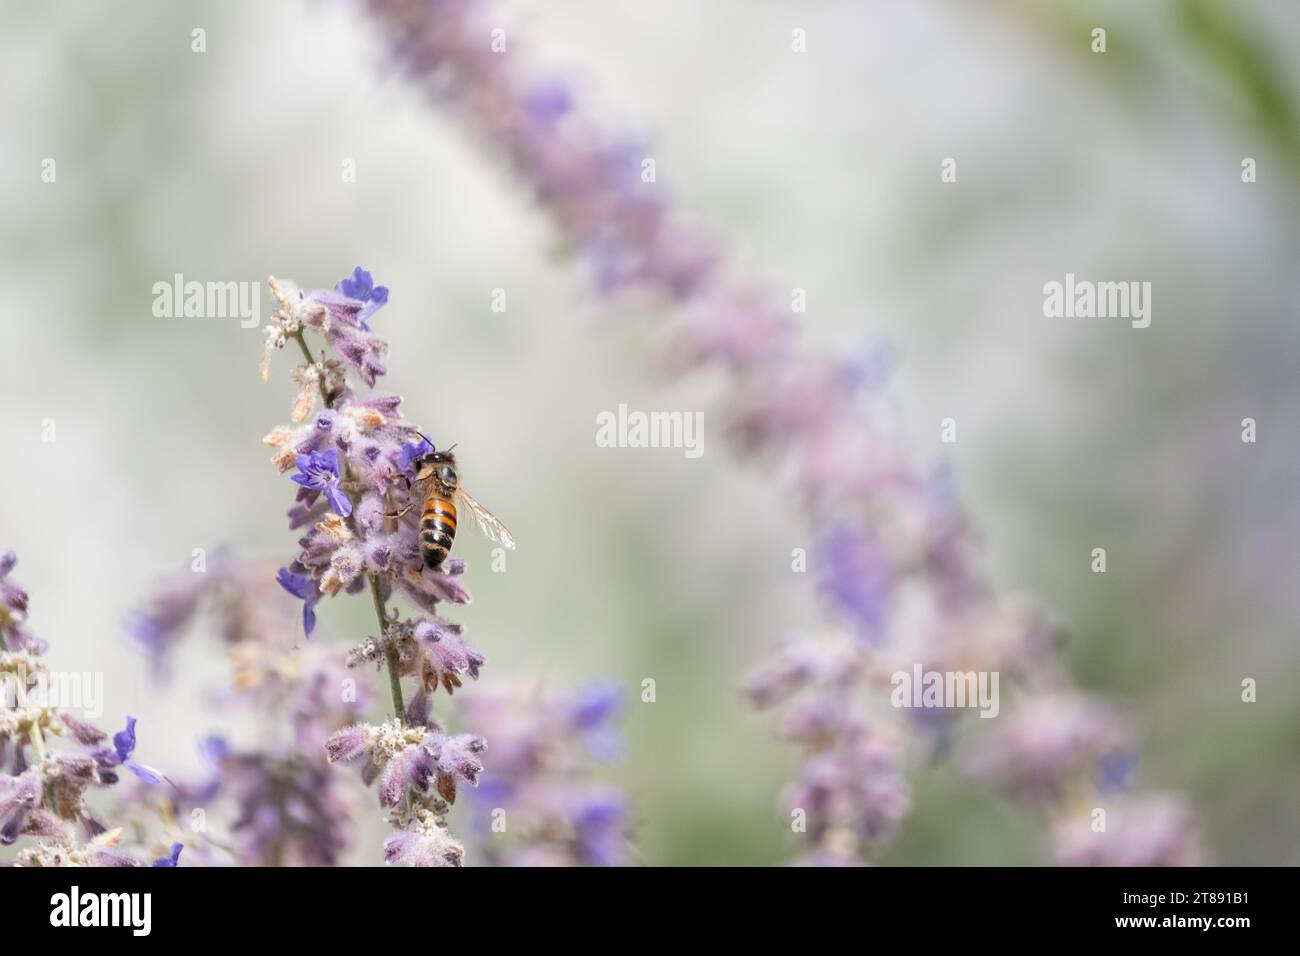 Eine einsame Honigbiene bestäubt eine Lavendelblüte, während sie Nektar sammelt; ein Makrobild einer Biene auf einer Blume mit geringer Tiefe des Feldes. Stockfoto